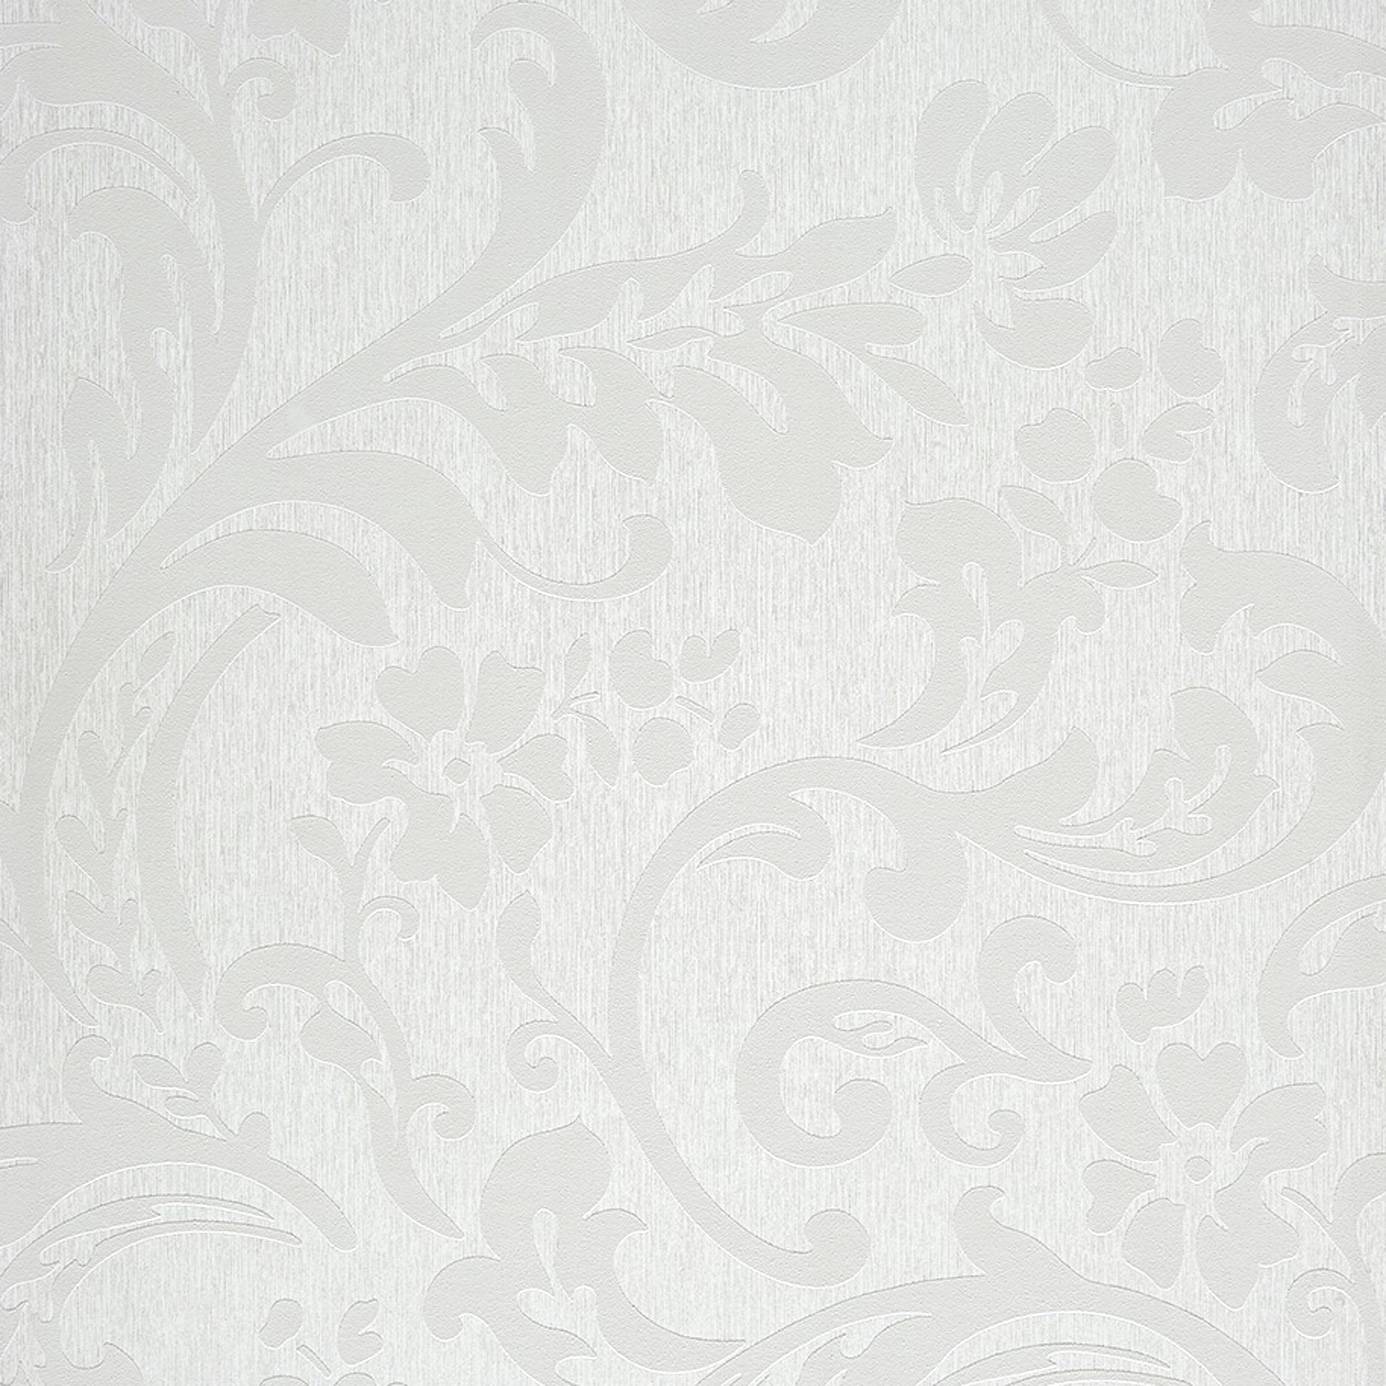 Arabesque Wallpaper - Grey 26509106 - Casadeco Midnight 3